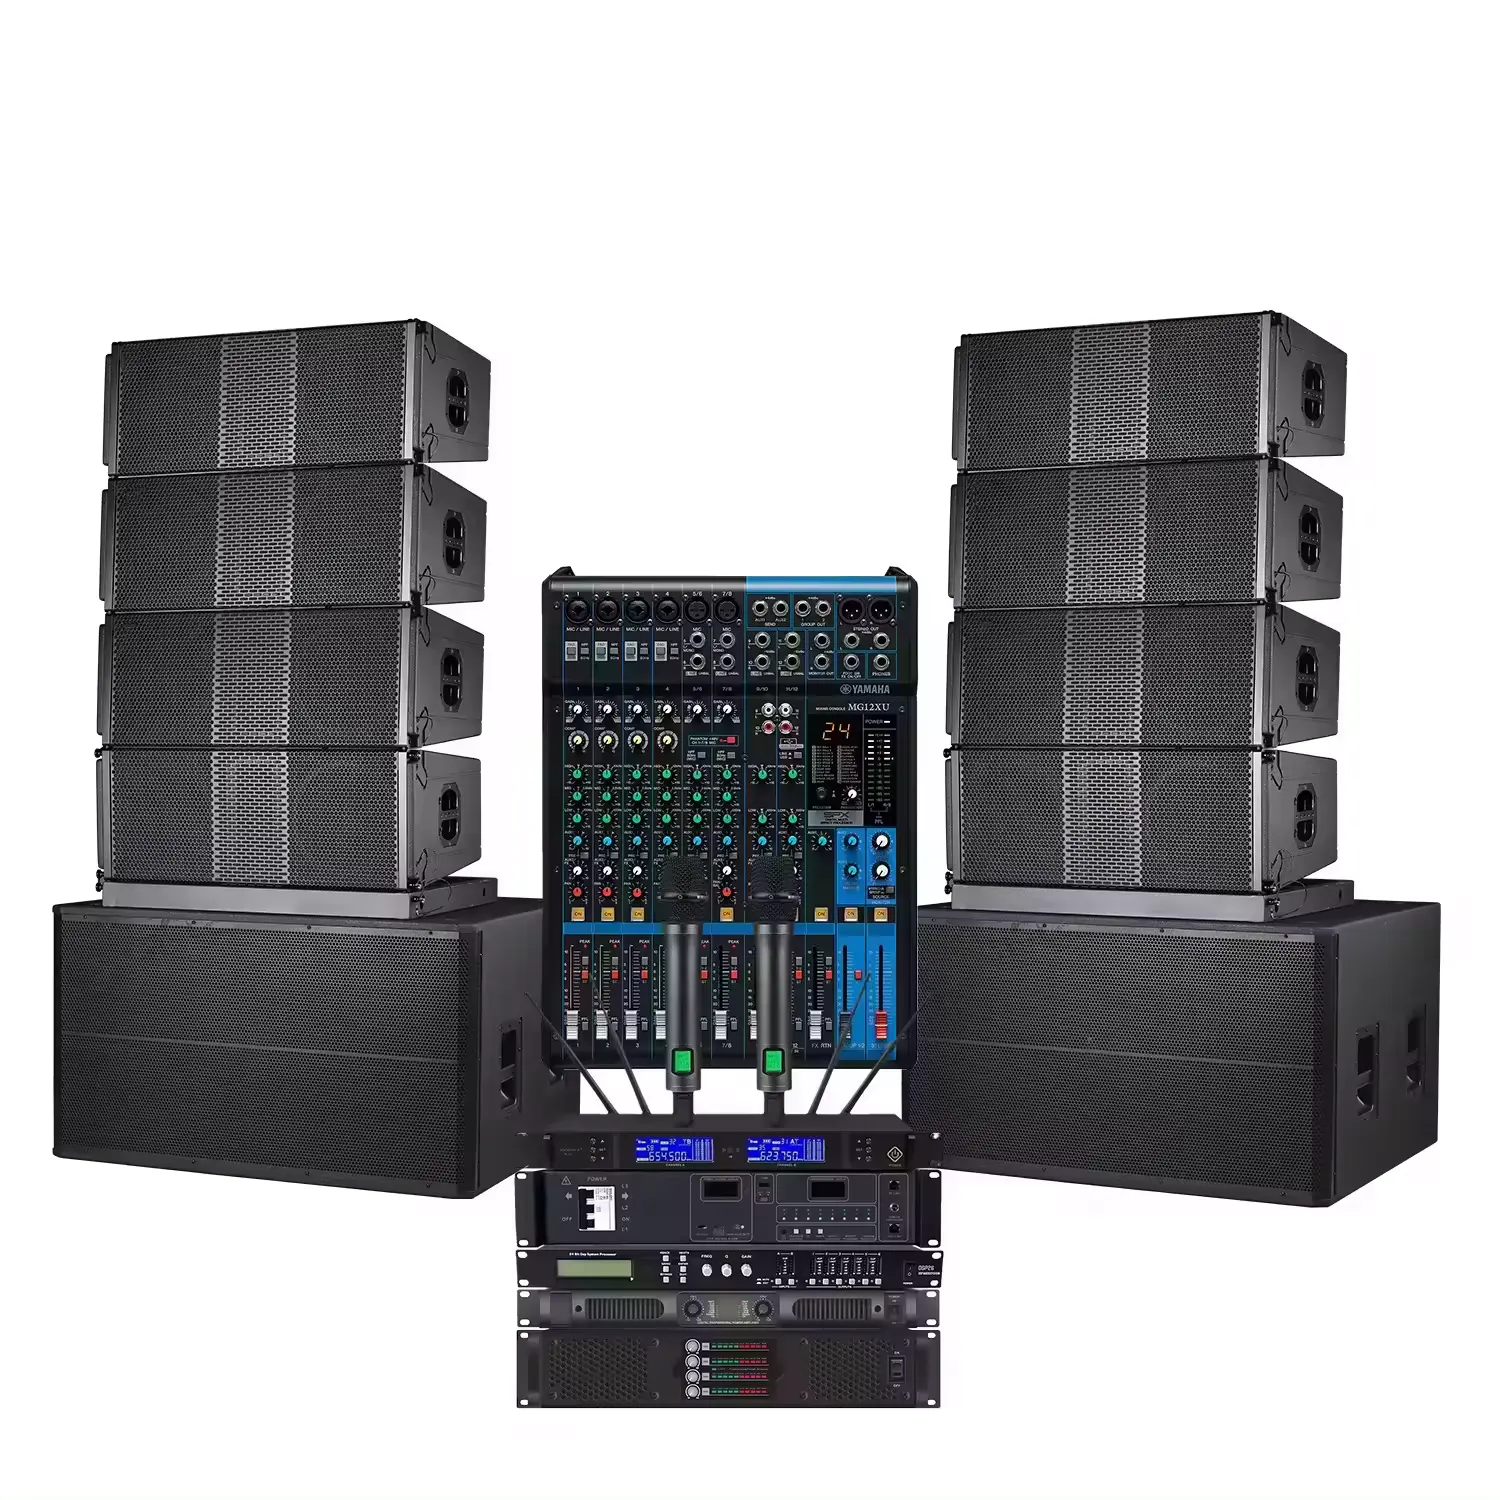 NEW 듀얼 18 인치 서브 우퍼 라인 어레이 프로 사운드 스피커 시스템 파워 앰프 전문 무대 음악 사운드 장비 풀 세트